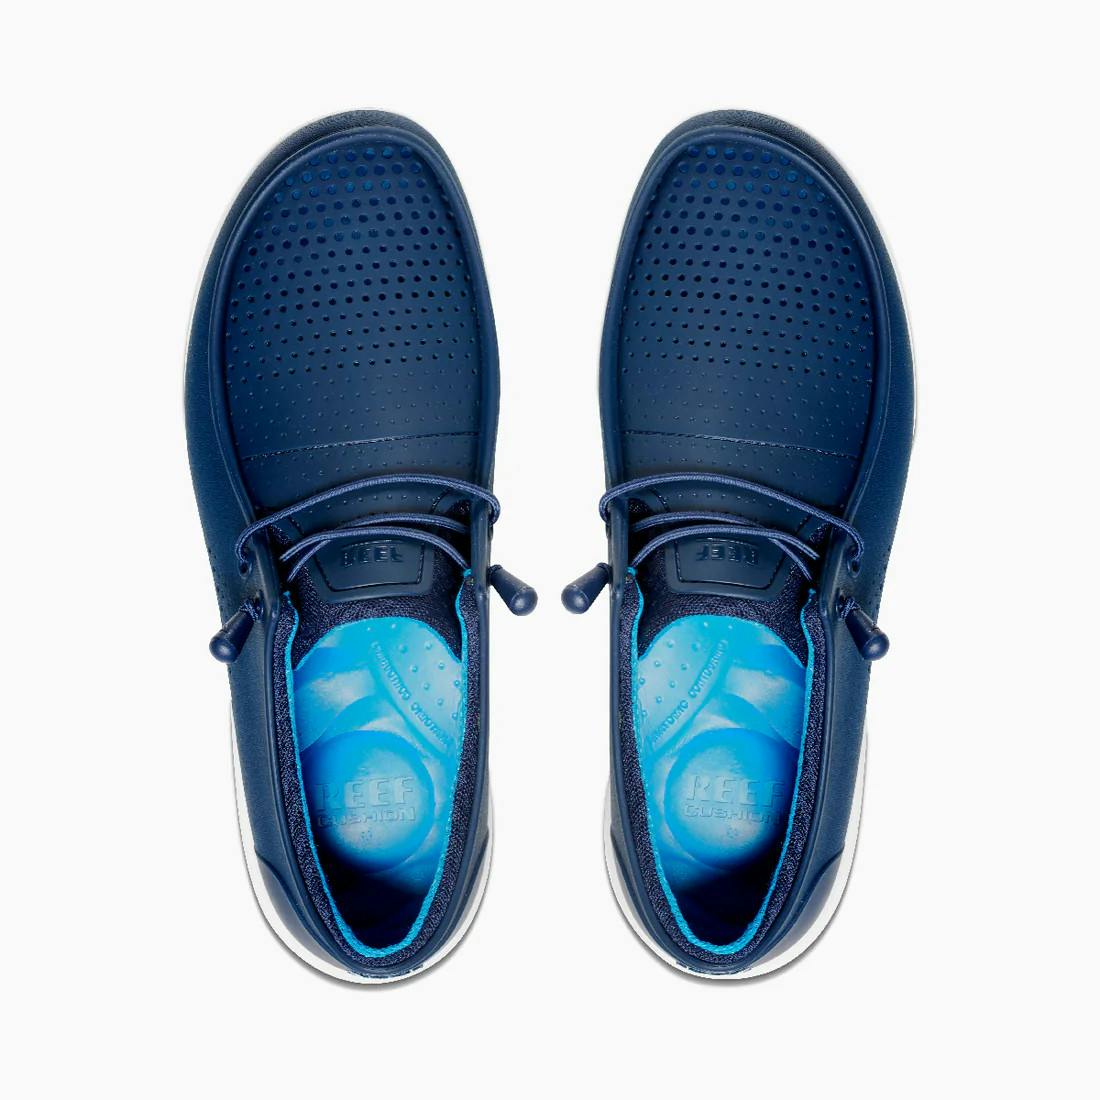 REEF Water Coast Shoes (Men’s) Top - Navy